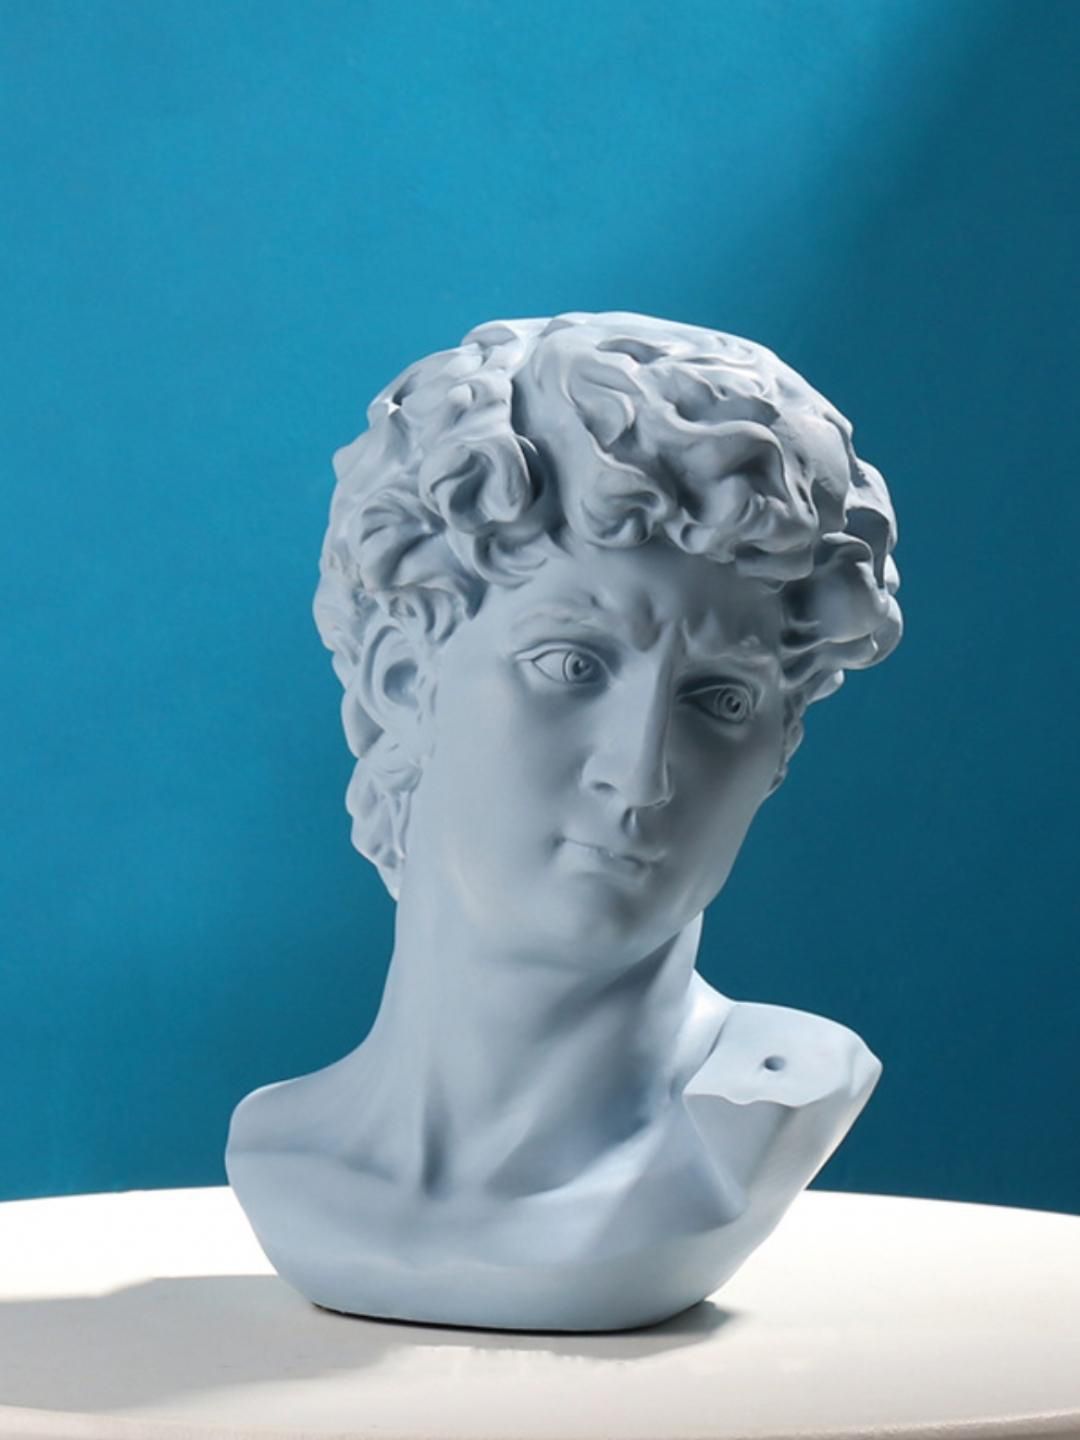 Nestasia Grey Greek Sculpture Showpiece Price in India